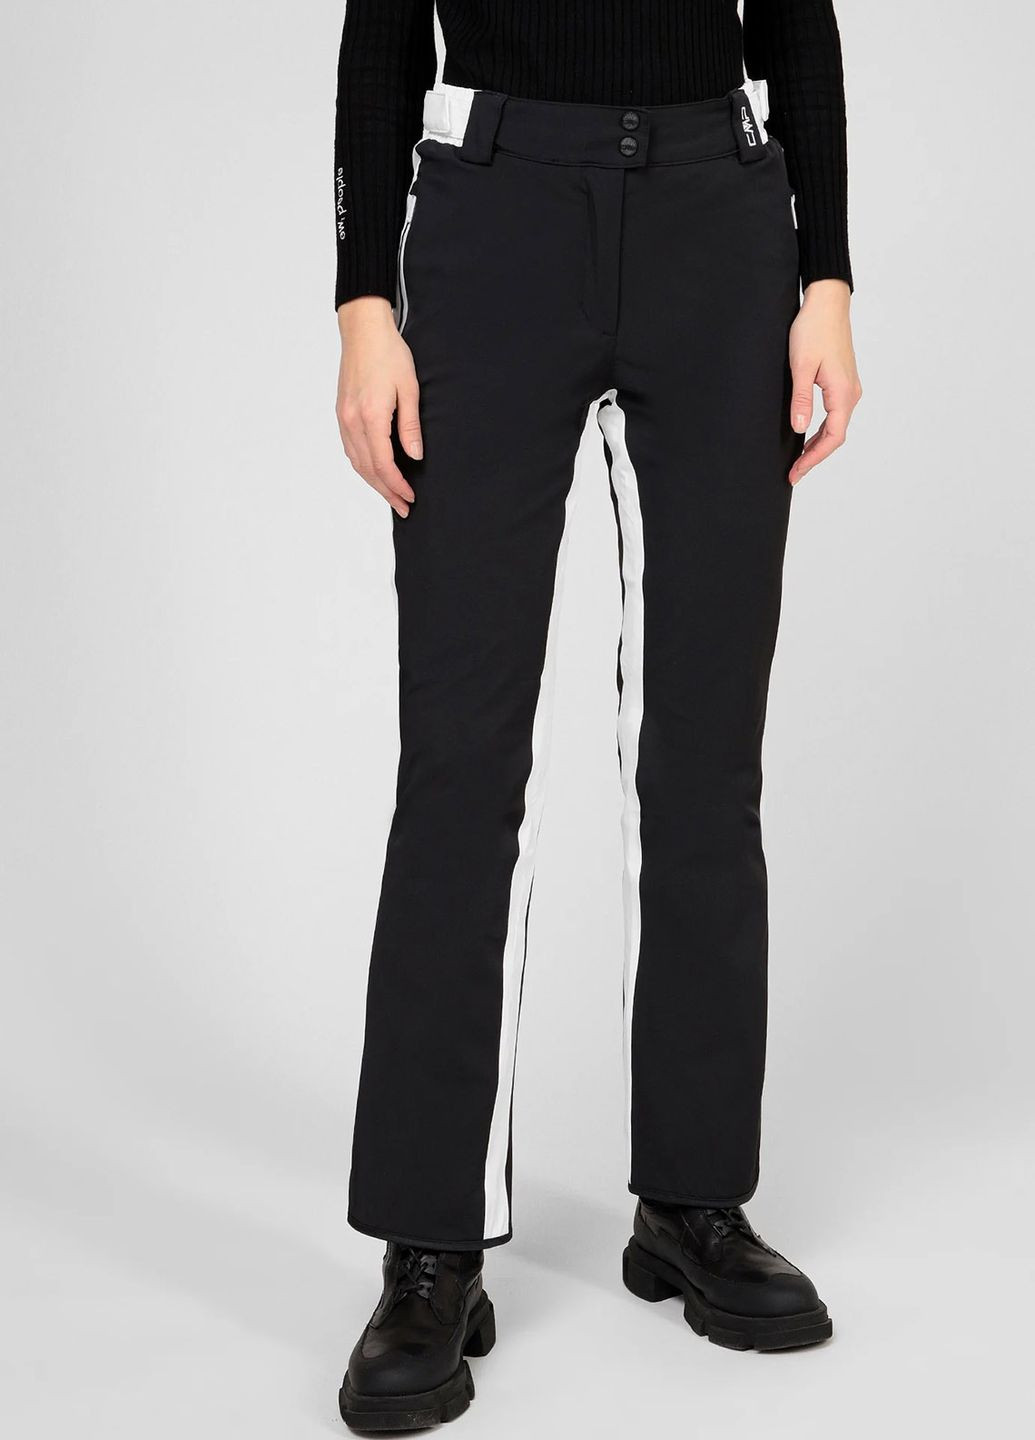 Черные лыжные брюки с лампасами Woman Pant CMP (260362539)